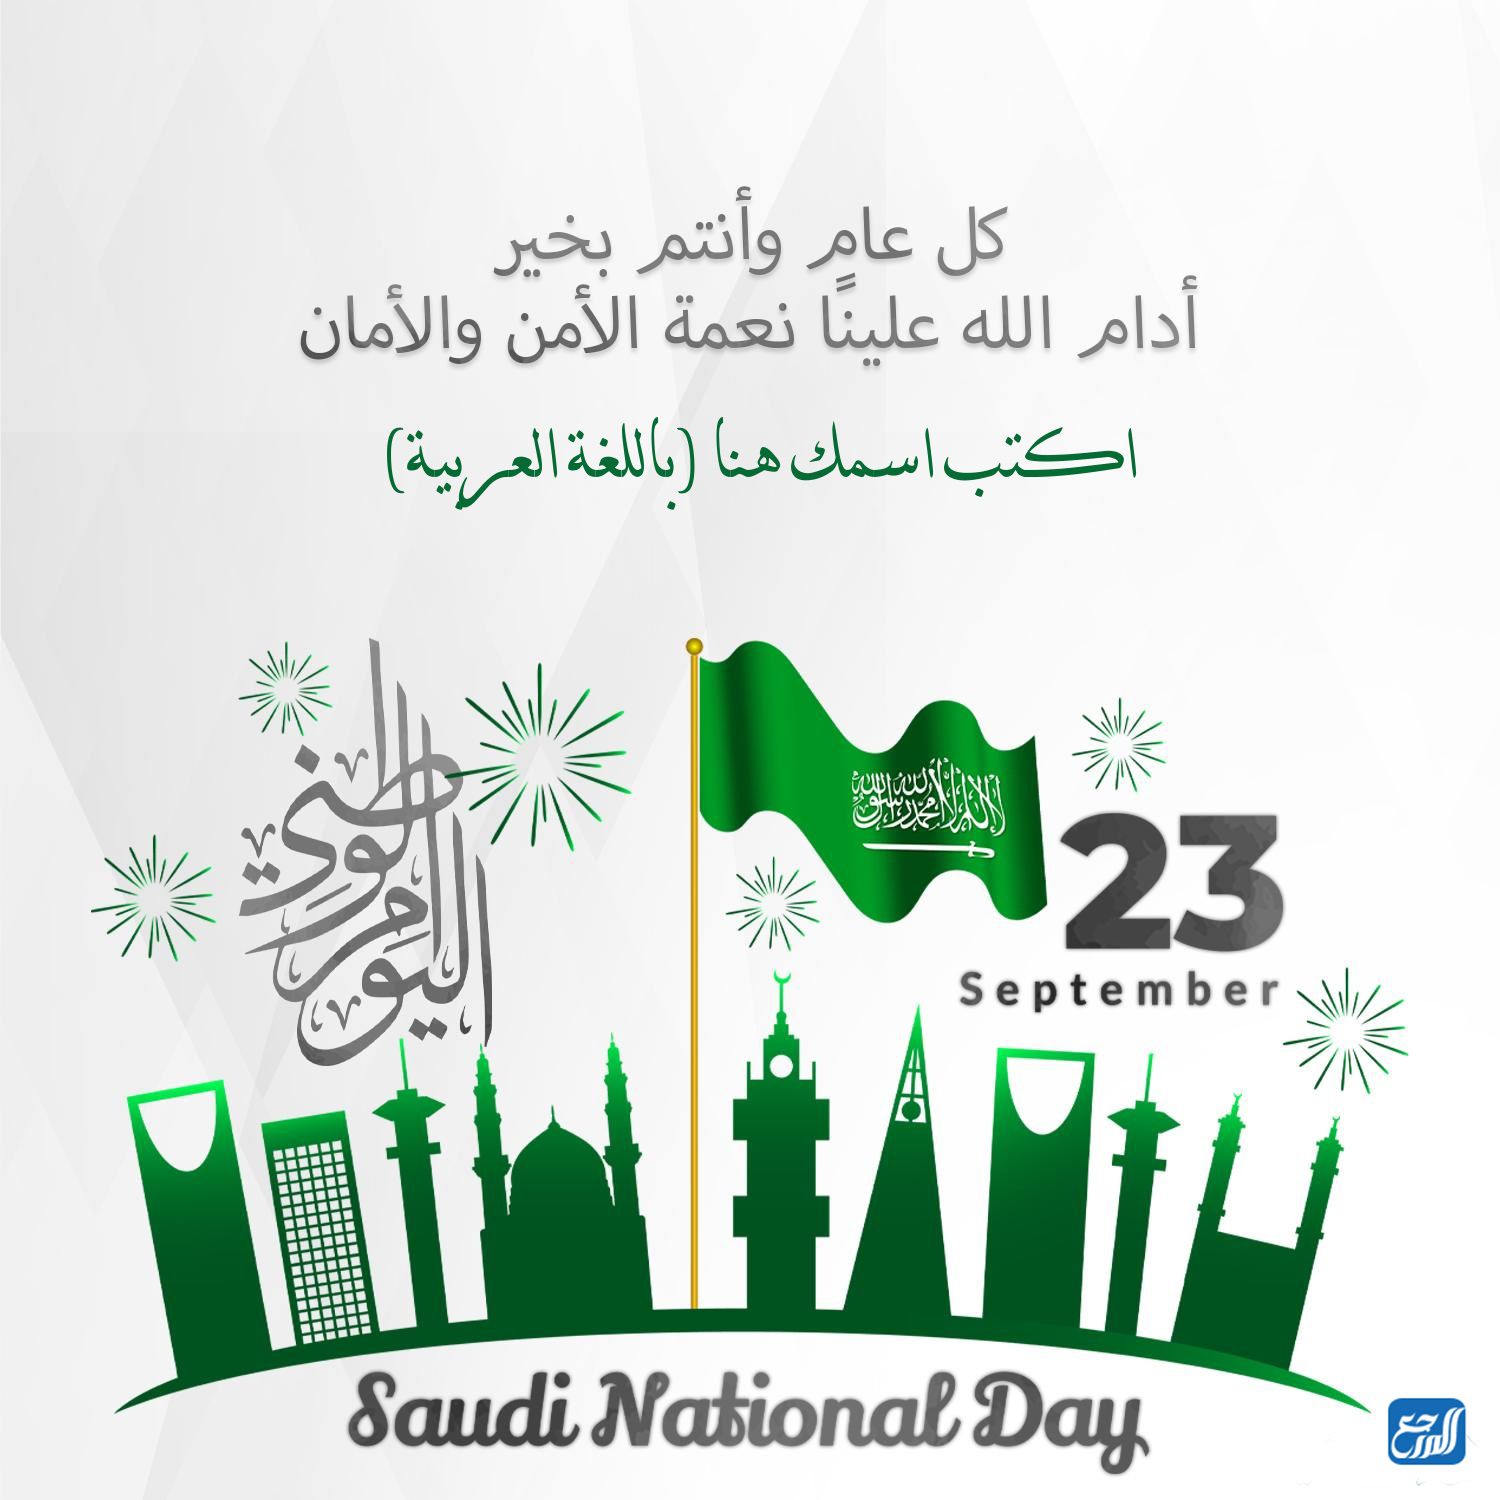 اكتب اسمك في اليوم الوطني السعودي 92 صورة